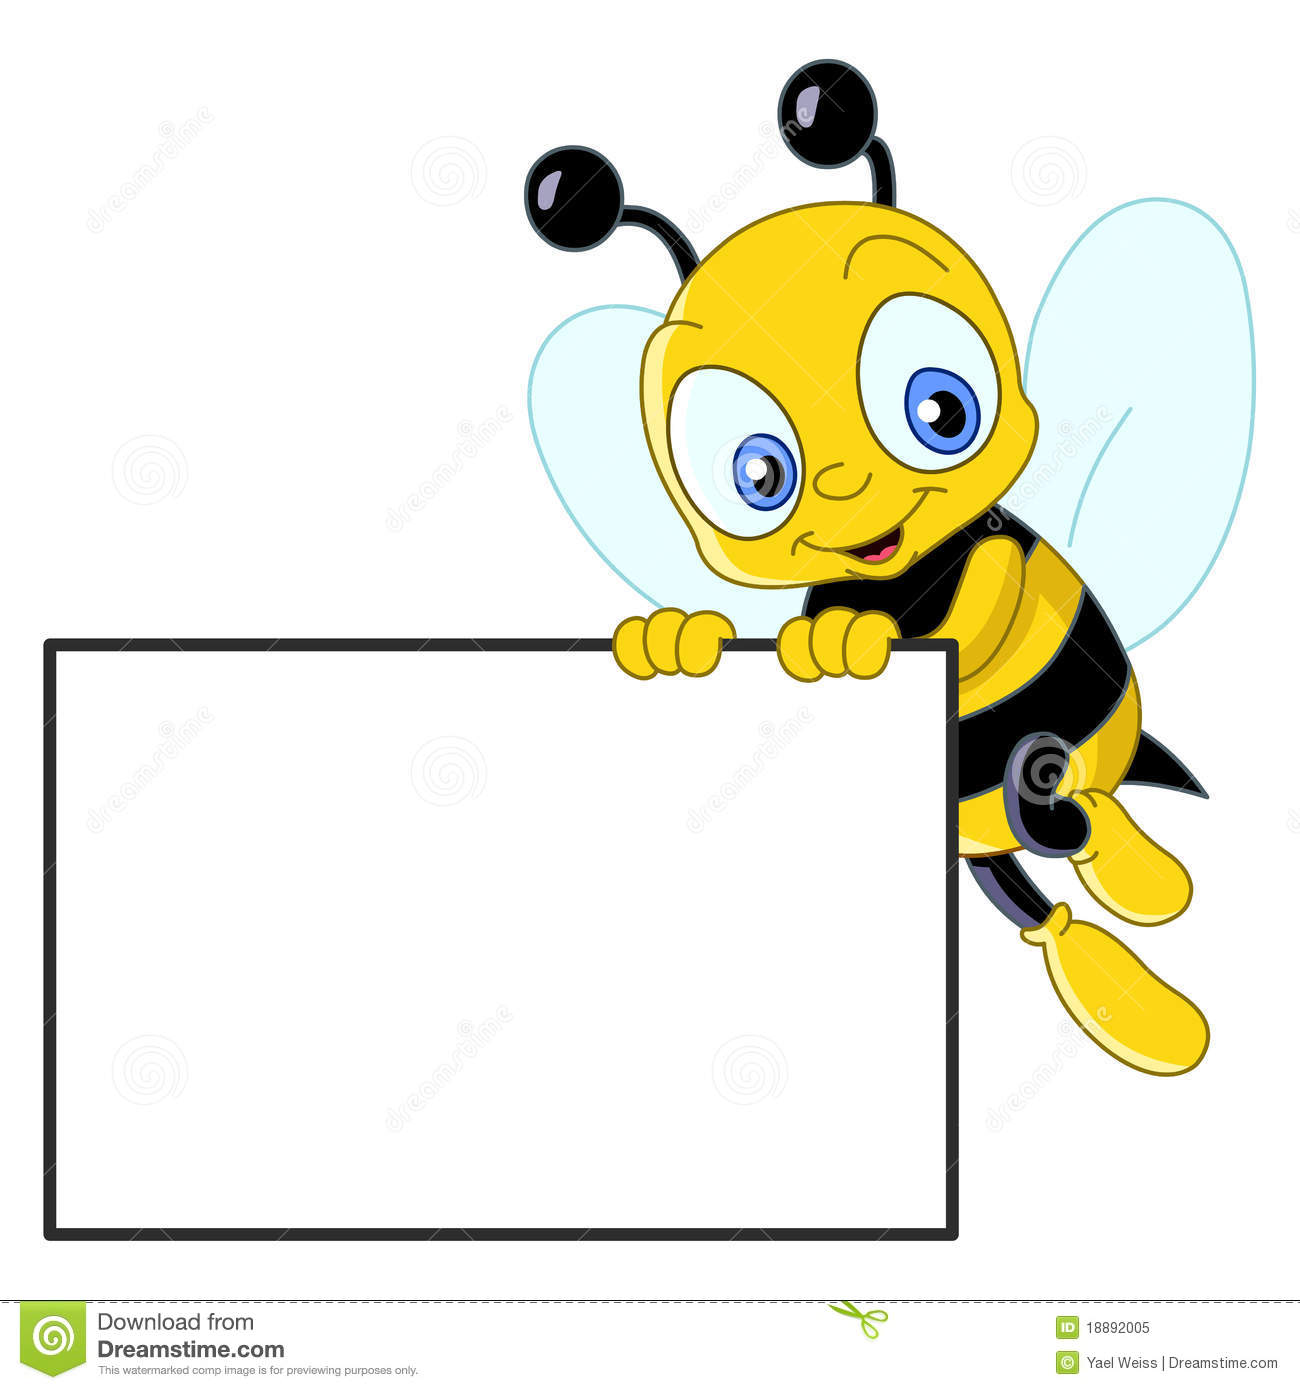 Spelling bee logo.